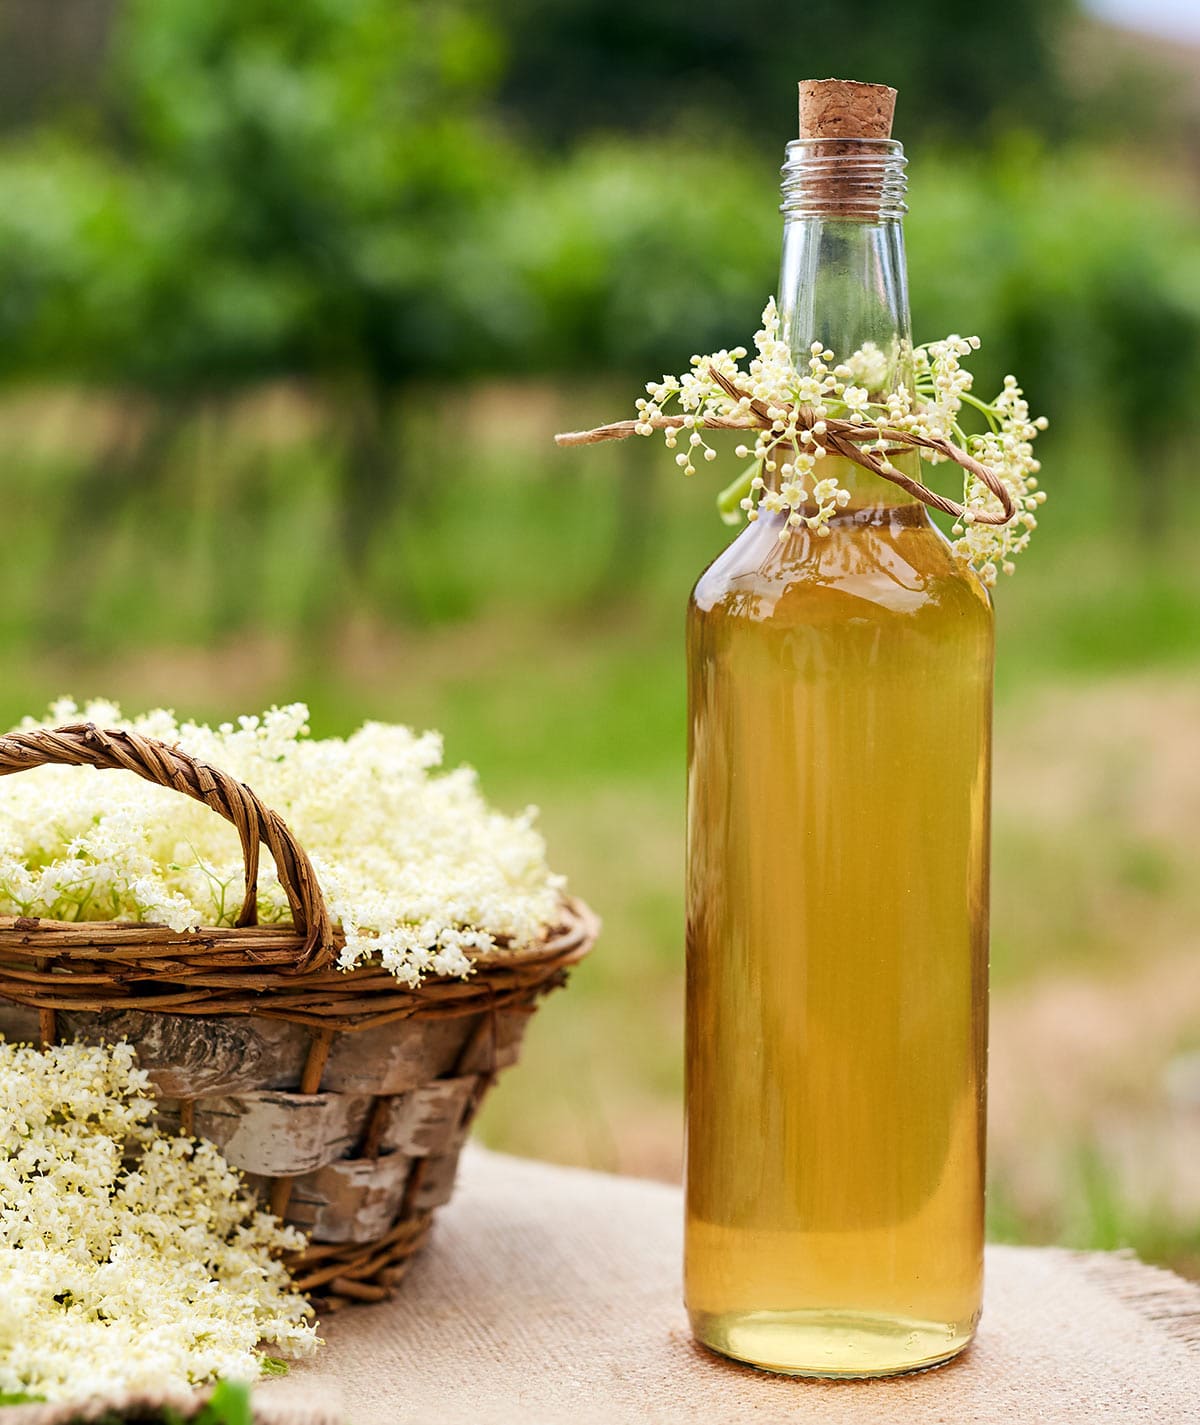 A bottle of elderflower liqueur with a basket of elderflowers next to it. 